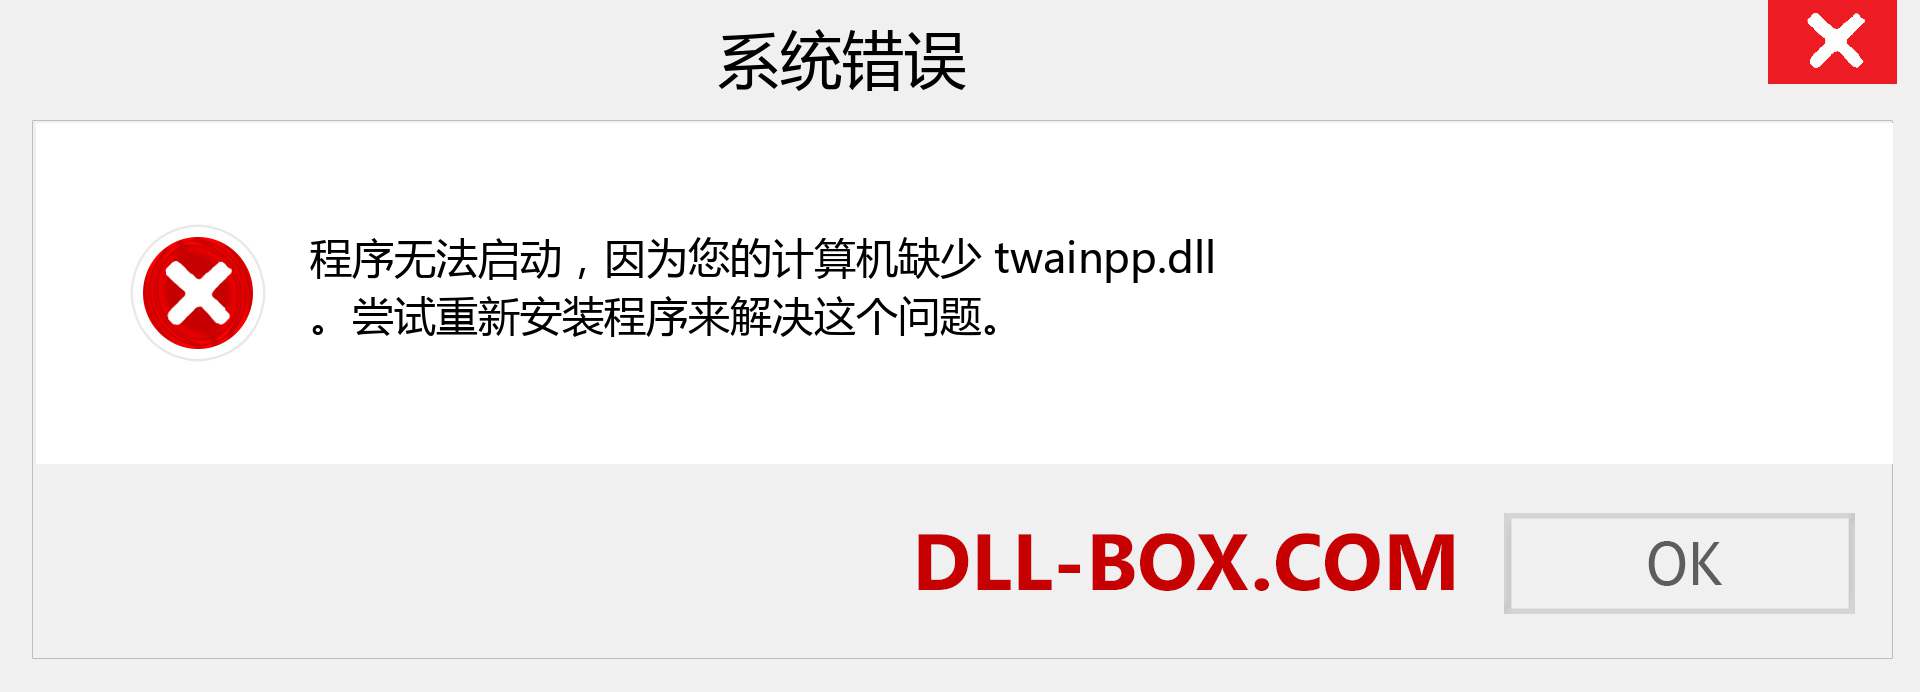 twainpp.dll 文件丢失？。 适用于 Windows 7、8、10 的下载 - 修复 Windows、照片、图像上的 twainpp dll 丢失错误